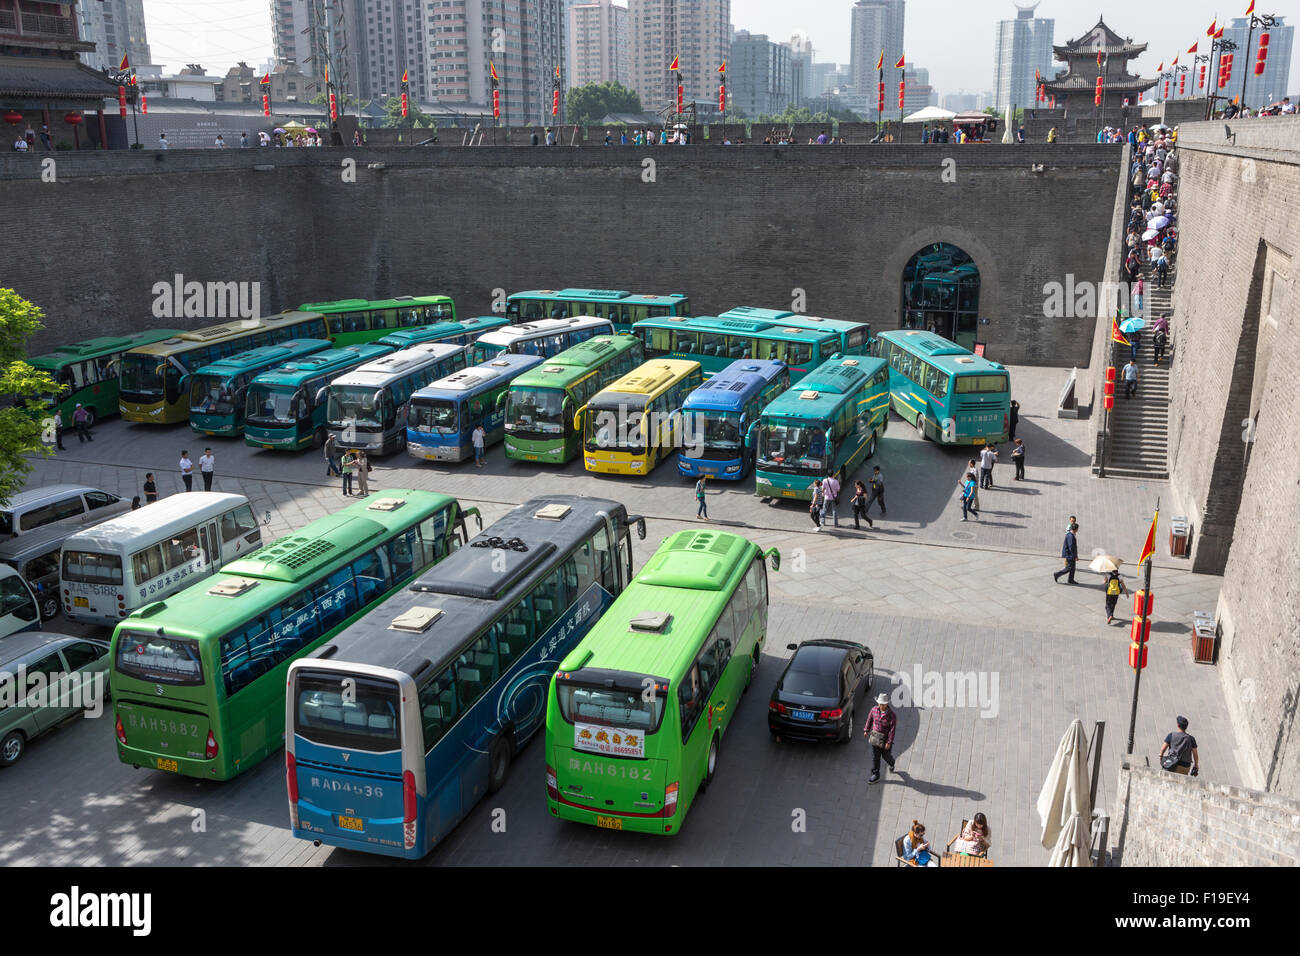 Puerta oriental de la muralla de la ciudad de Xi'an, con un puntaje de autobuses turísticos y muchos turistas en las escaleras o en la pared. Foto de stock